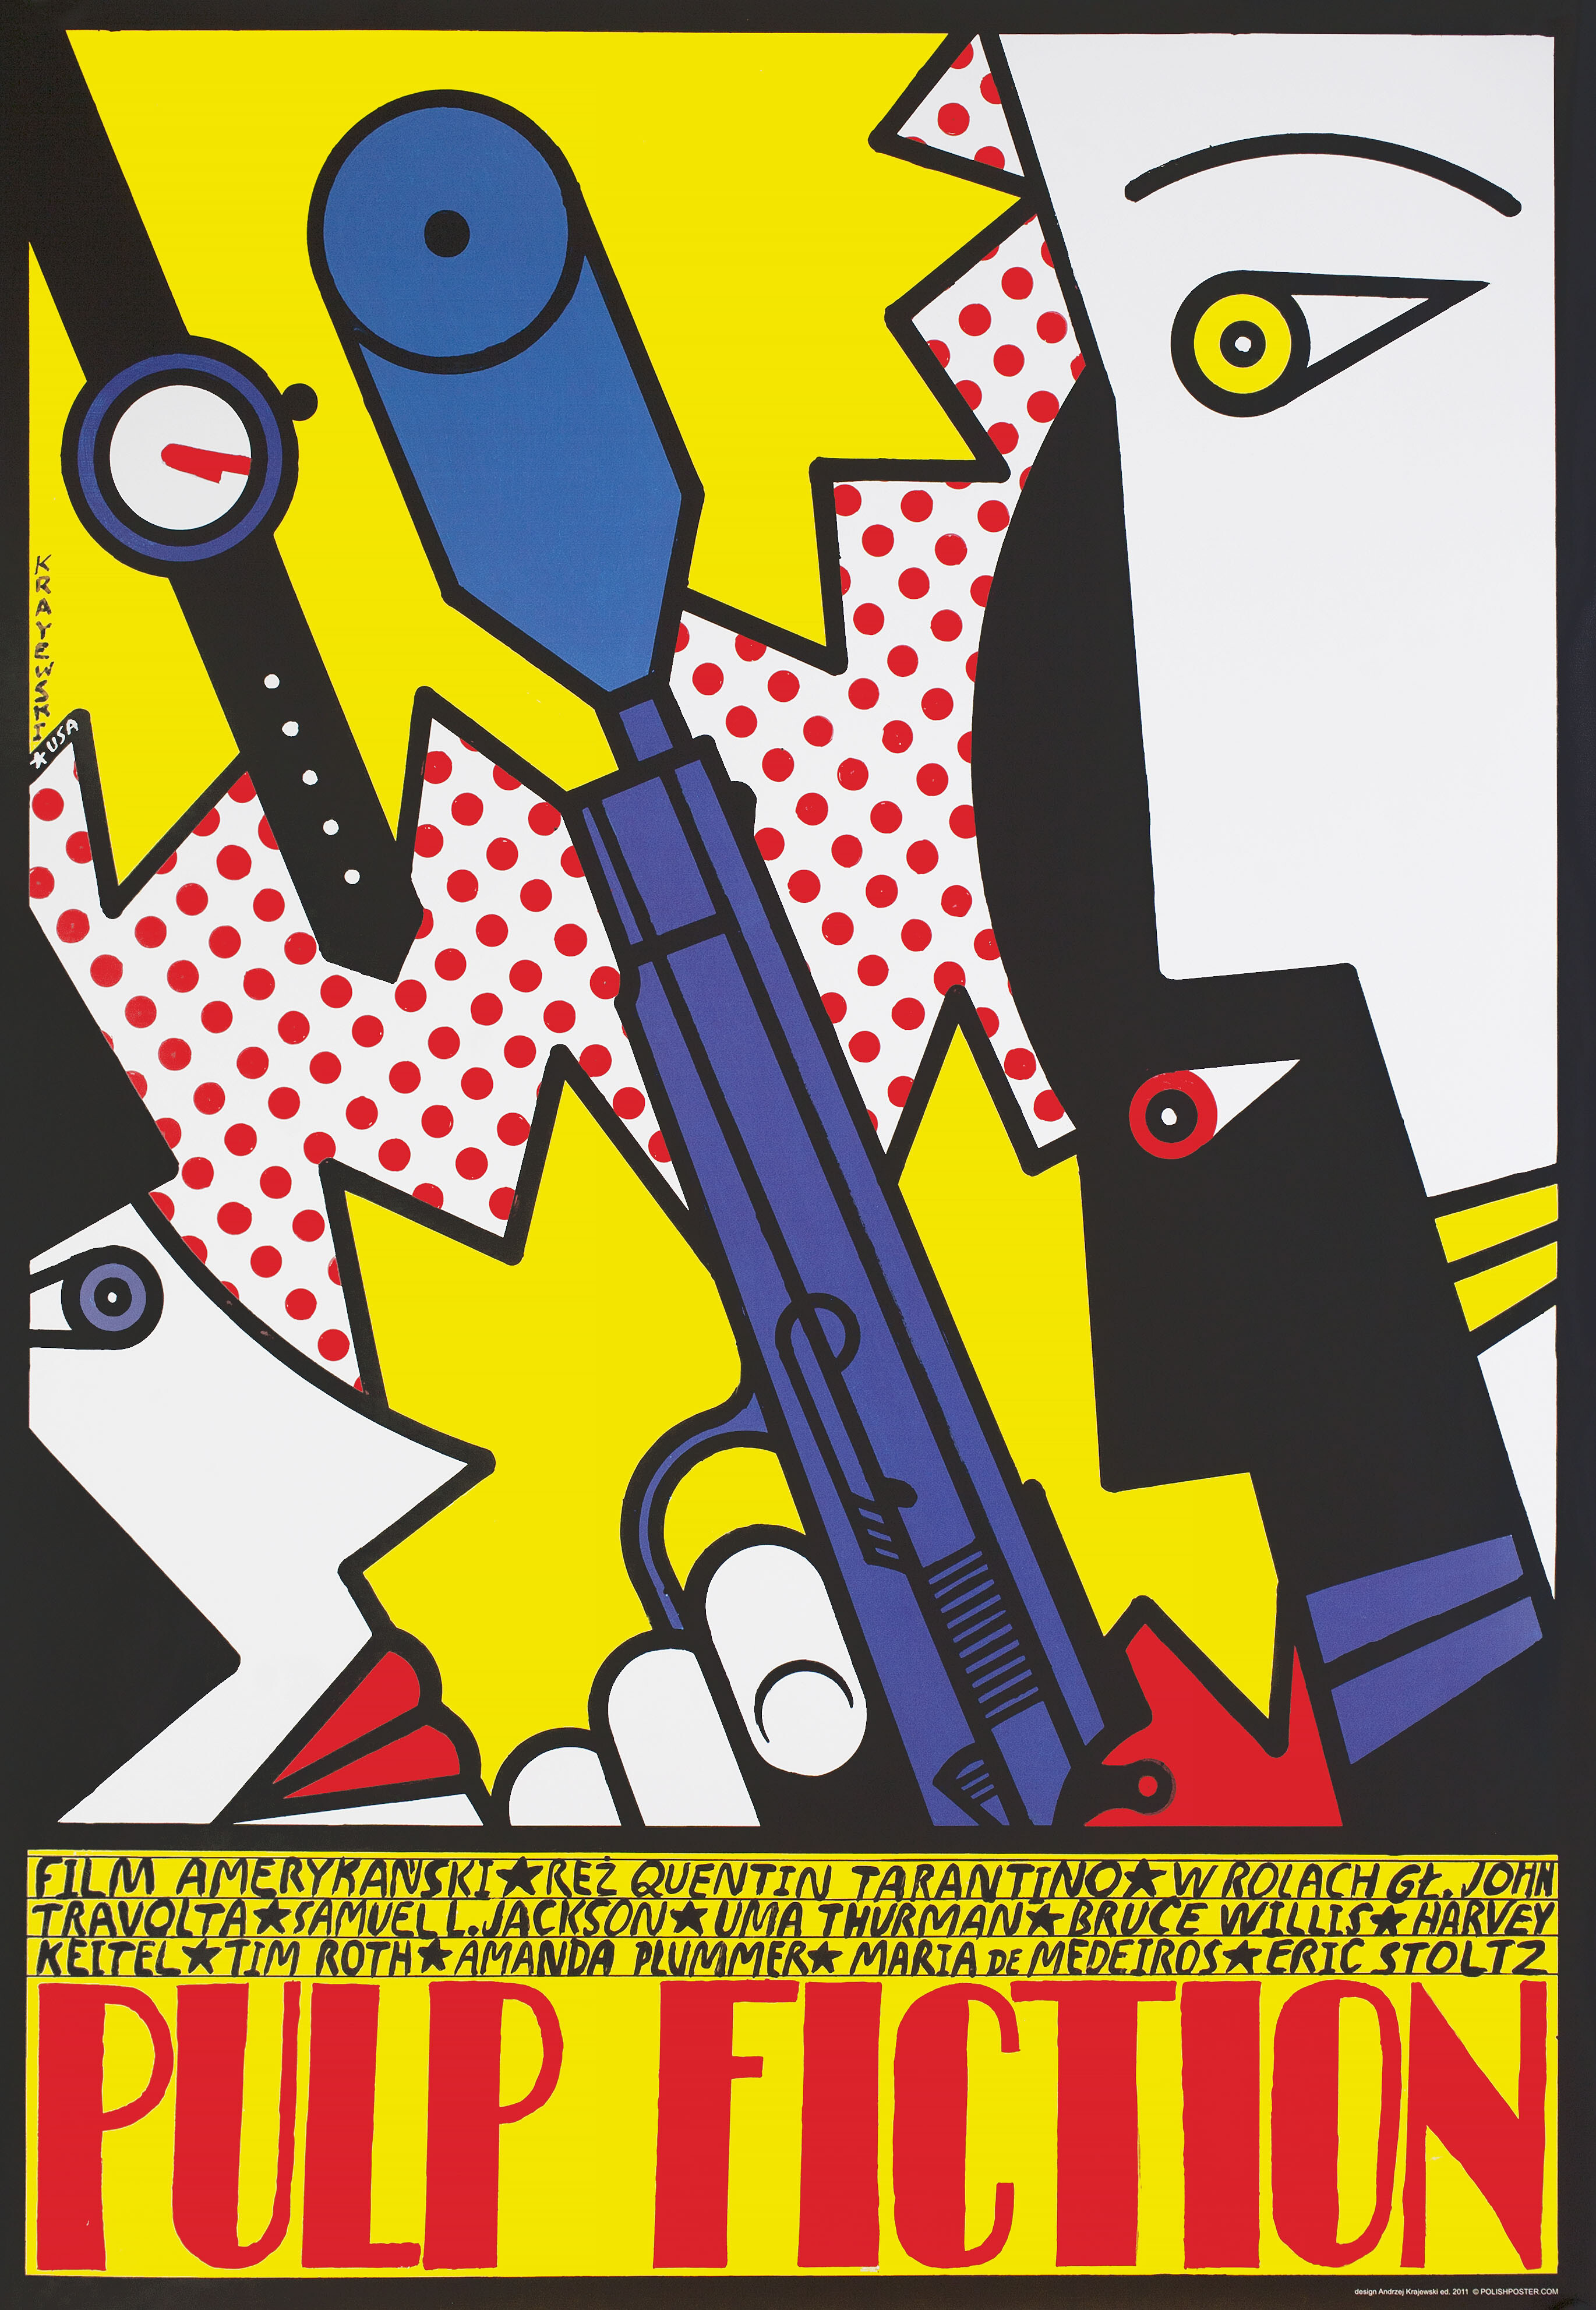 Криминальное чтиво (Pulp Fiction, 1994), режиссёр Квентин Тарантино, польский плакат к фильму, 2011 год, автор Анджей Краевский